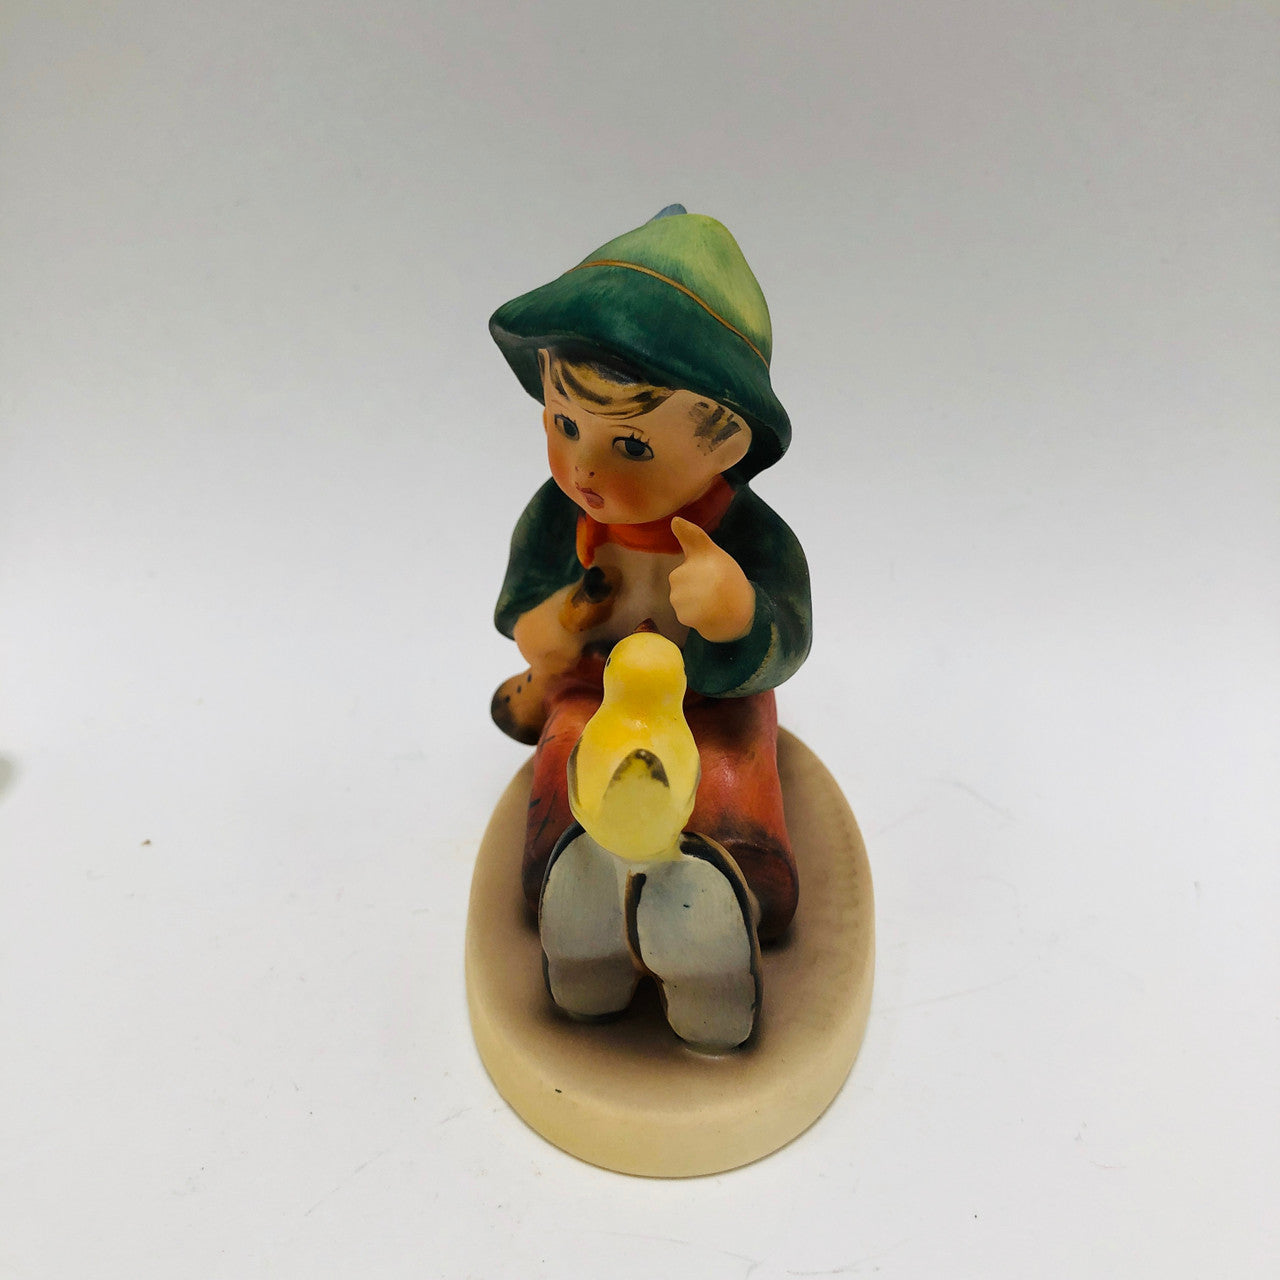 Vintage Hummel figurine - "Singing Lessons", TMK5